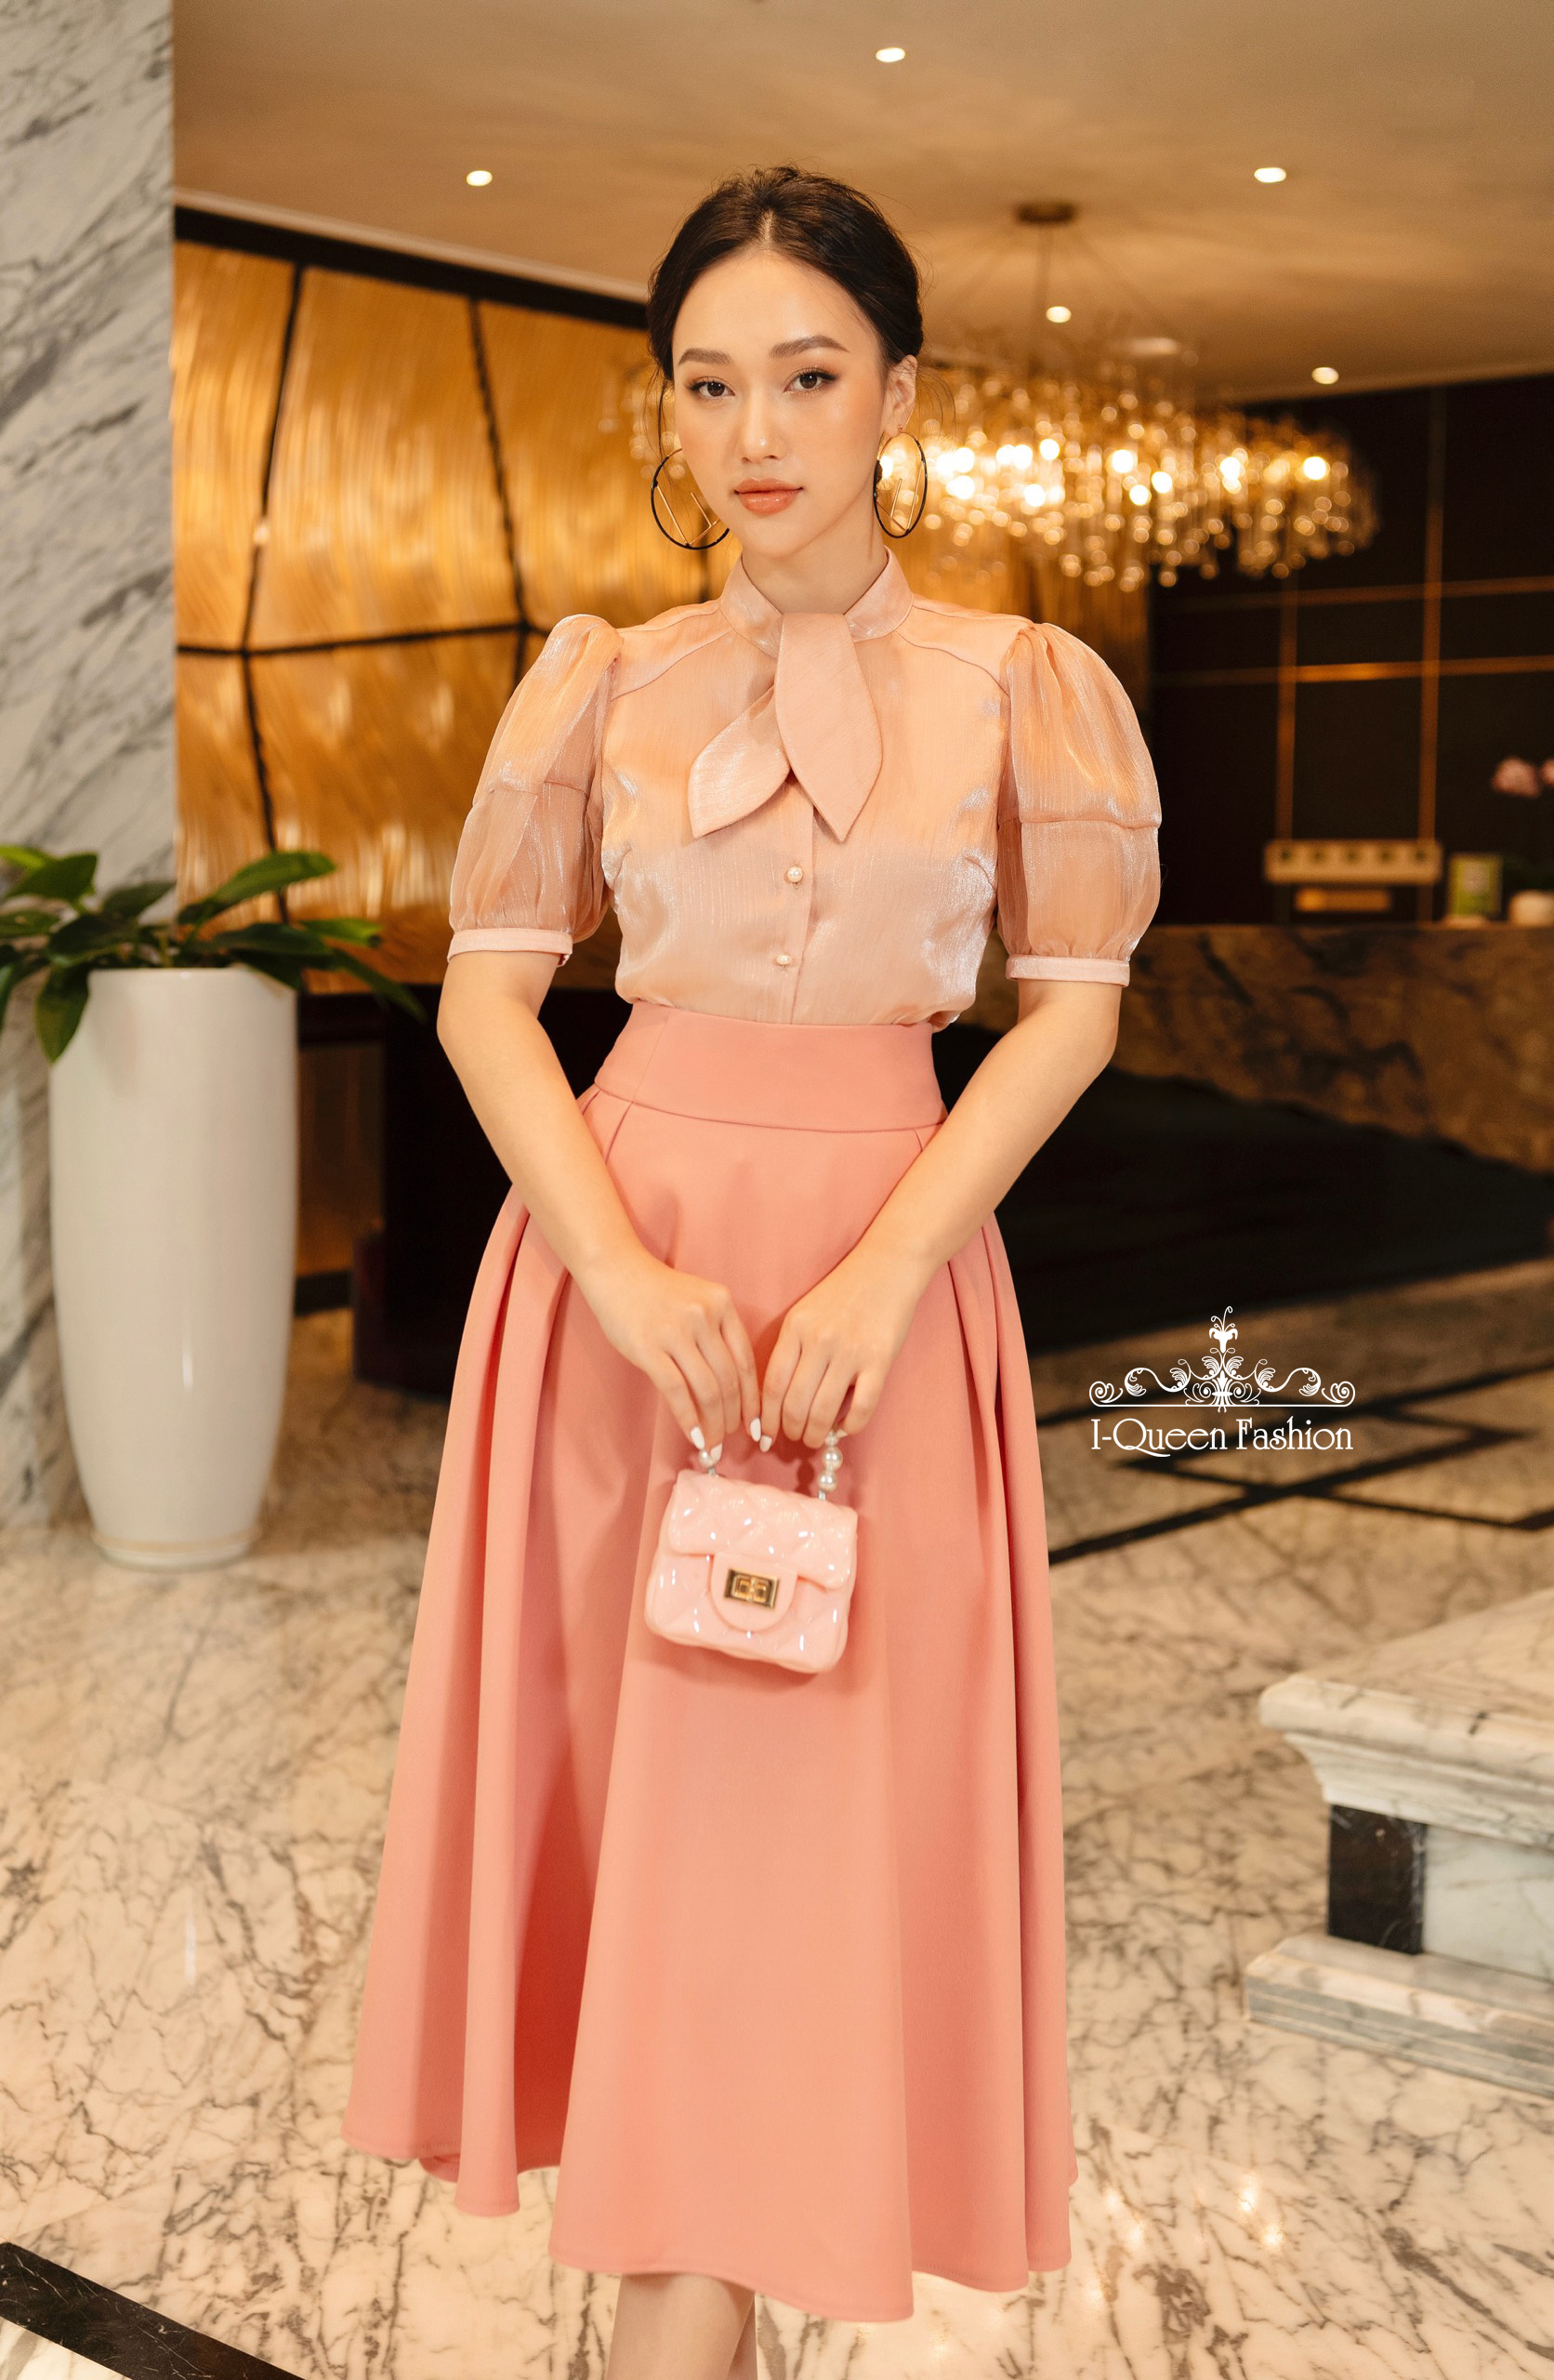 Link order mua váy Quảng Châu trên Taobao chất lượng “BAO ĐẸP” -  shopquangchau.vn